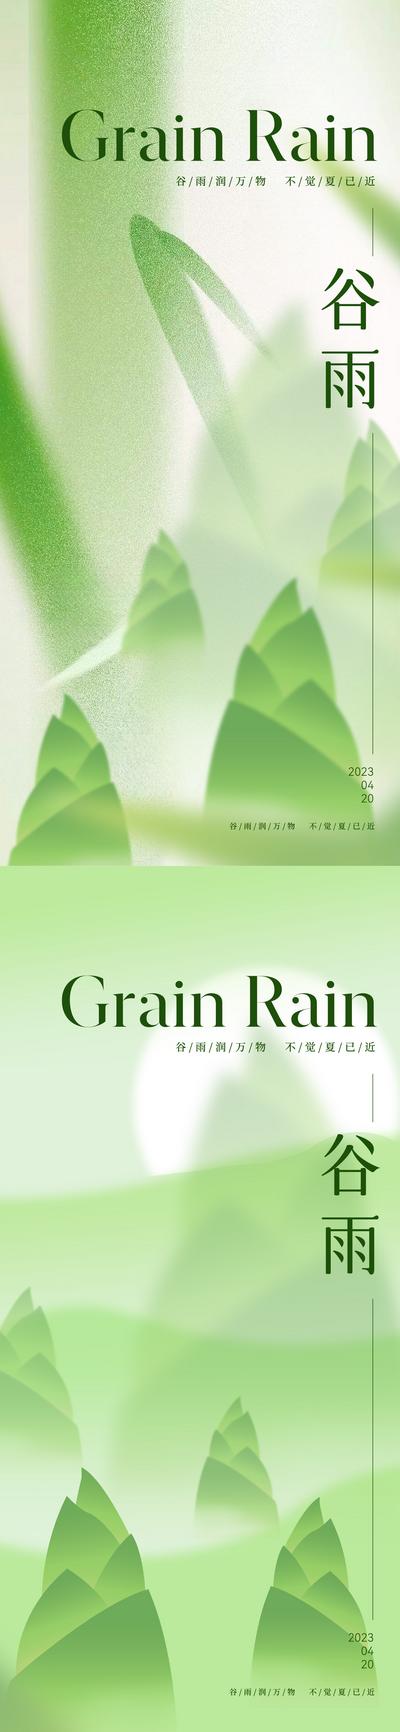 南门网 广告 海报 系列 谷雨 房地产 二十四节气 意境 唯美 简约 竹子 竹叶 竹笋 高级